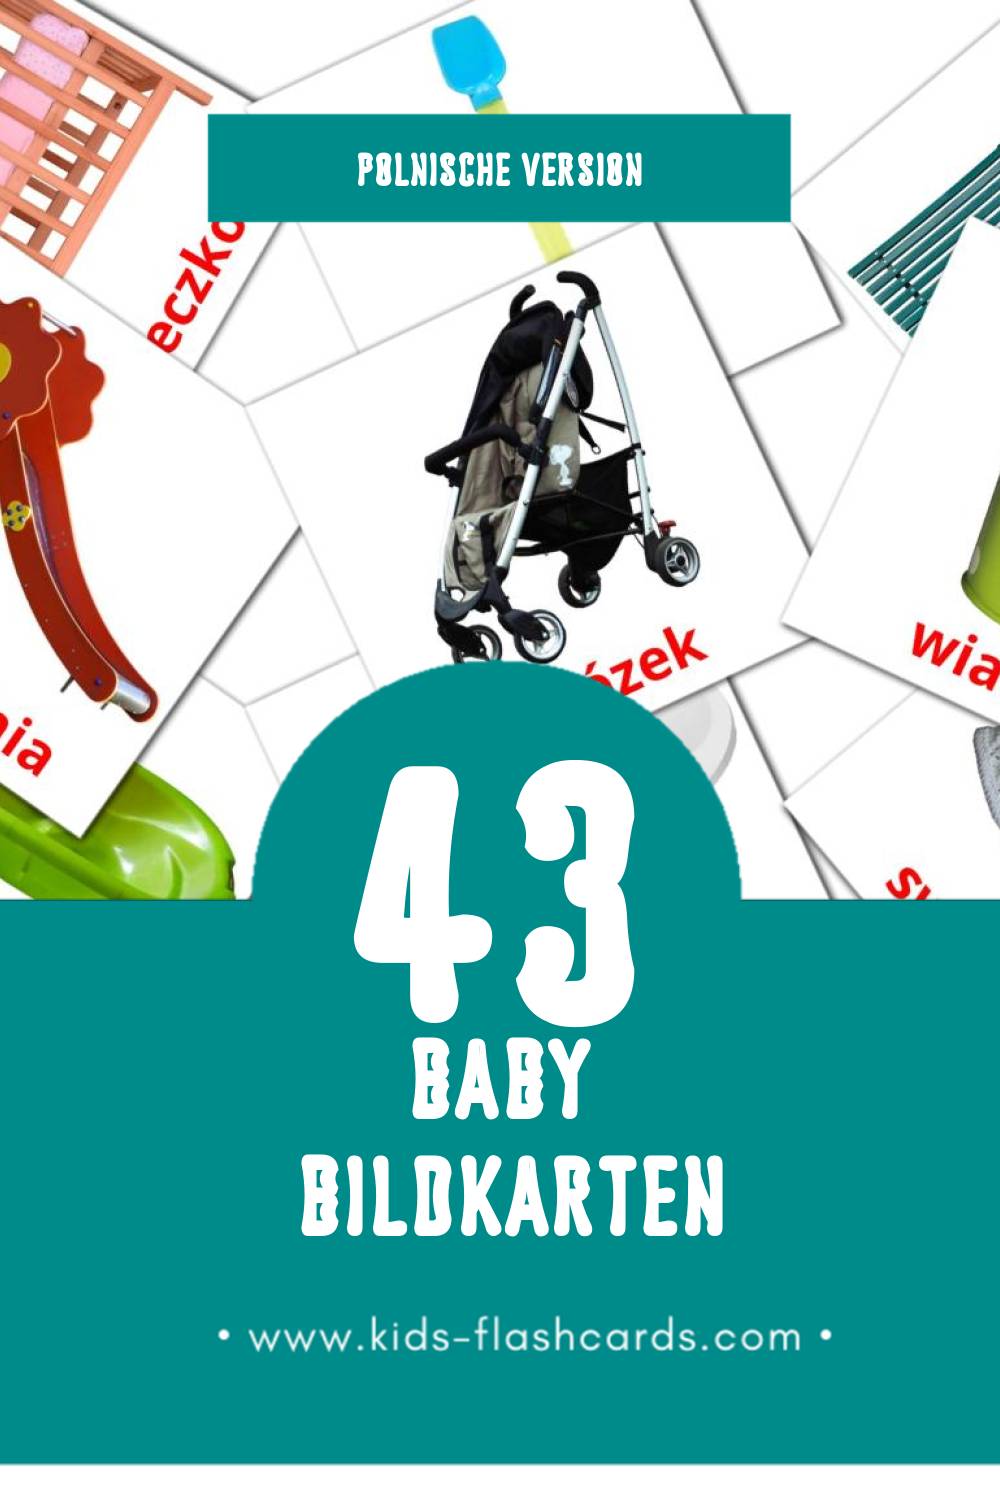 Visual Dziecko Flashcards für Kleinkinder (45 Karten in Polnisch)